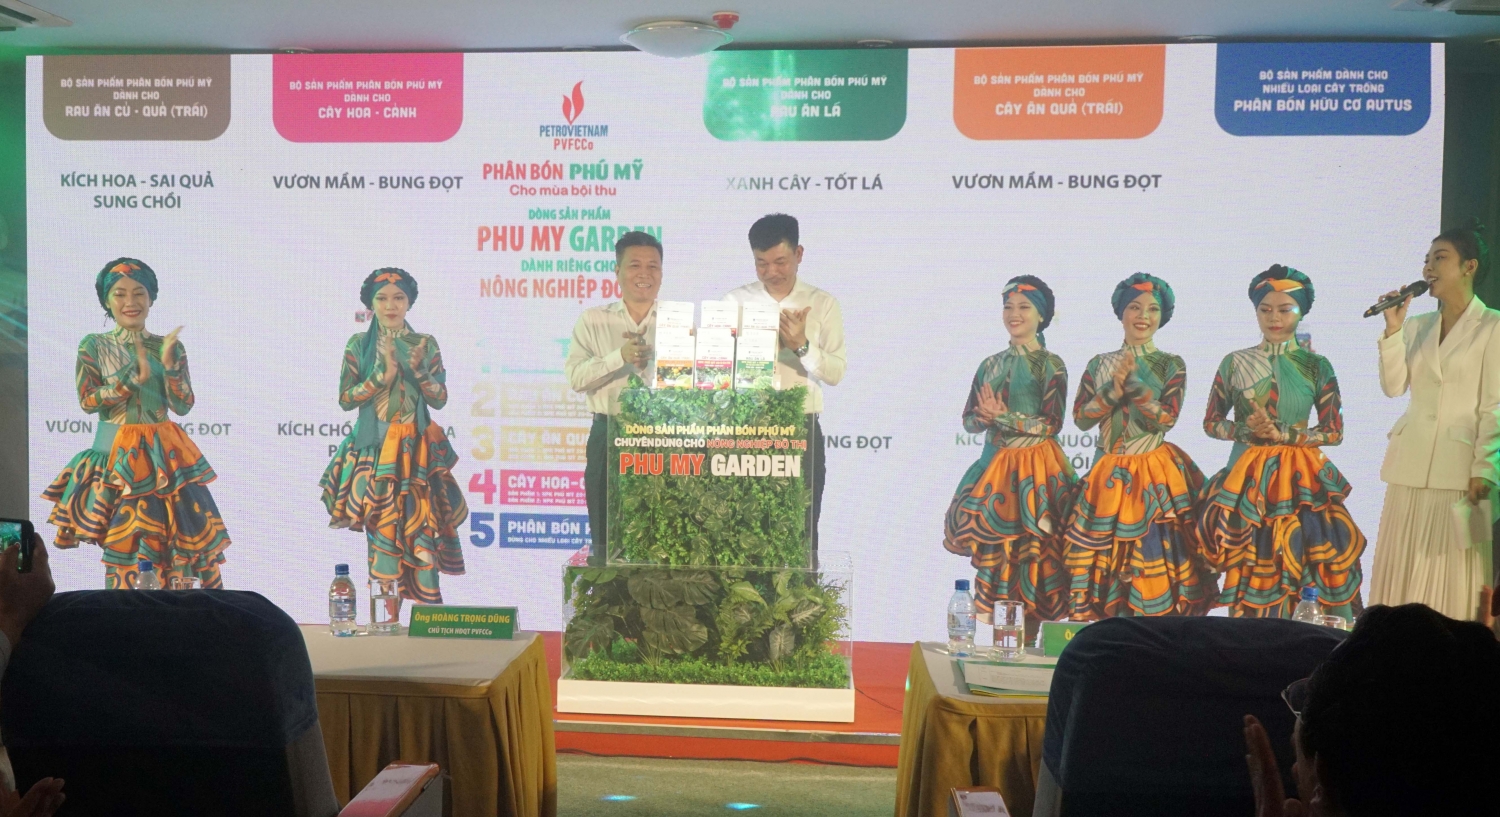 Ông Hoàng Trọng Dũng - Chủ tịch HĐQT PVFCCo và ông Lê Cự Tân - Tổng Giám đốc PVFCCo thực hiện nghi thức ra mắt dòng sản phẩm nông nghiệp đô thị của Tổng công ty